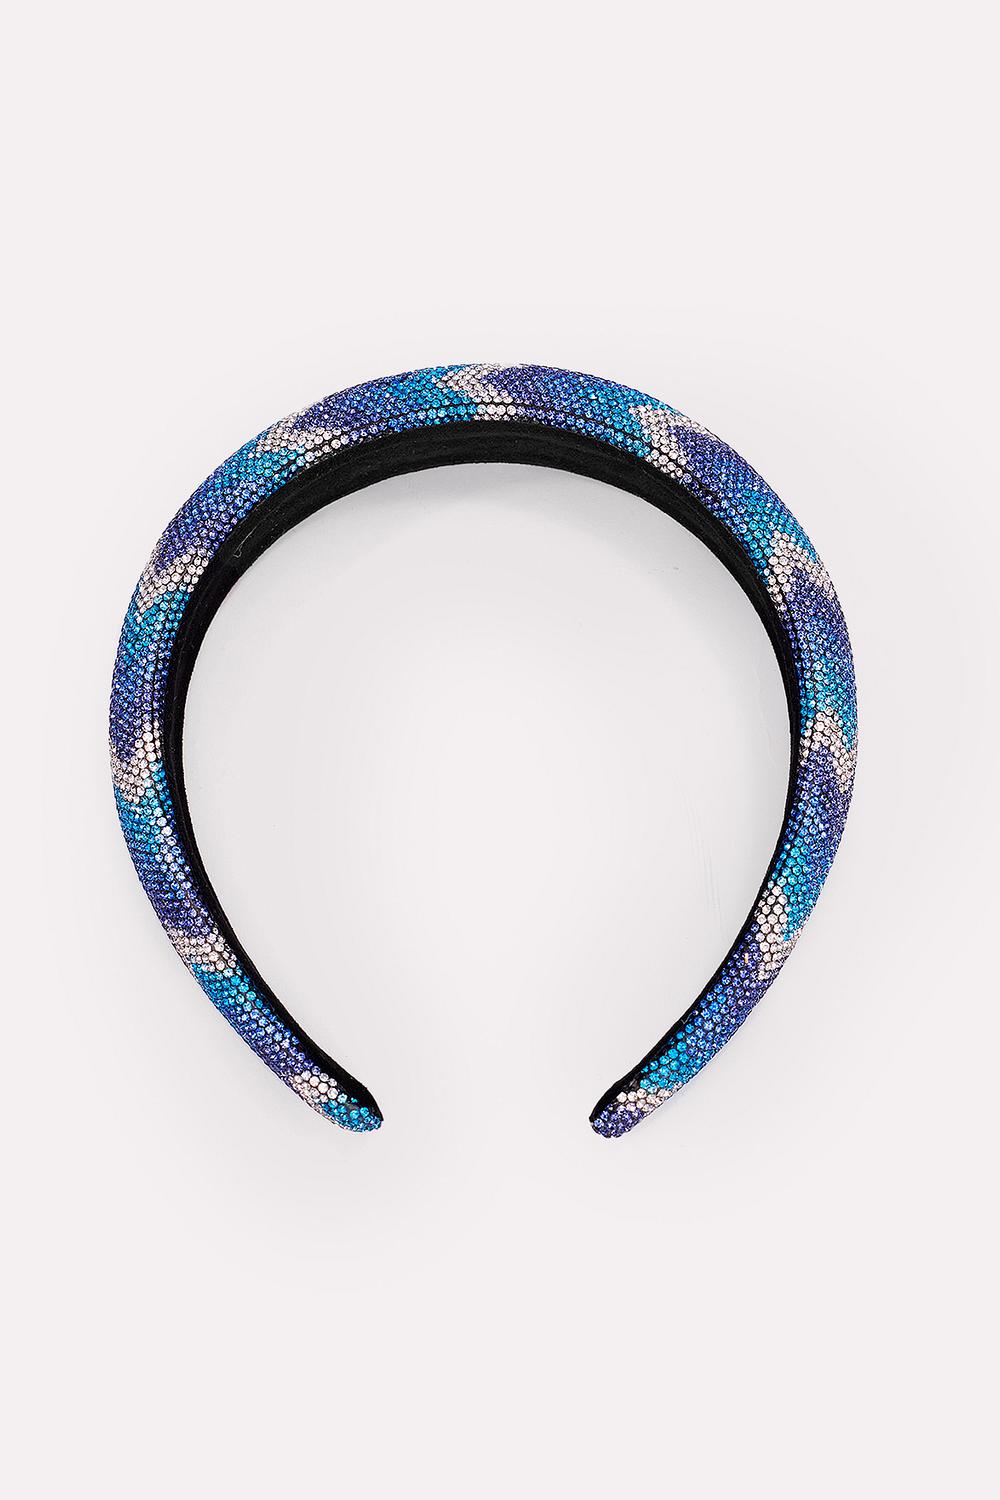 Blauwe haarband met strass steentjes